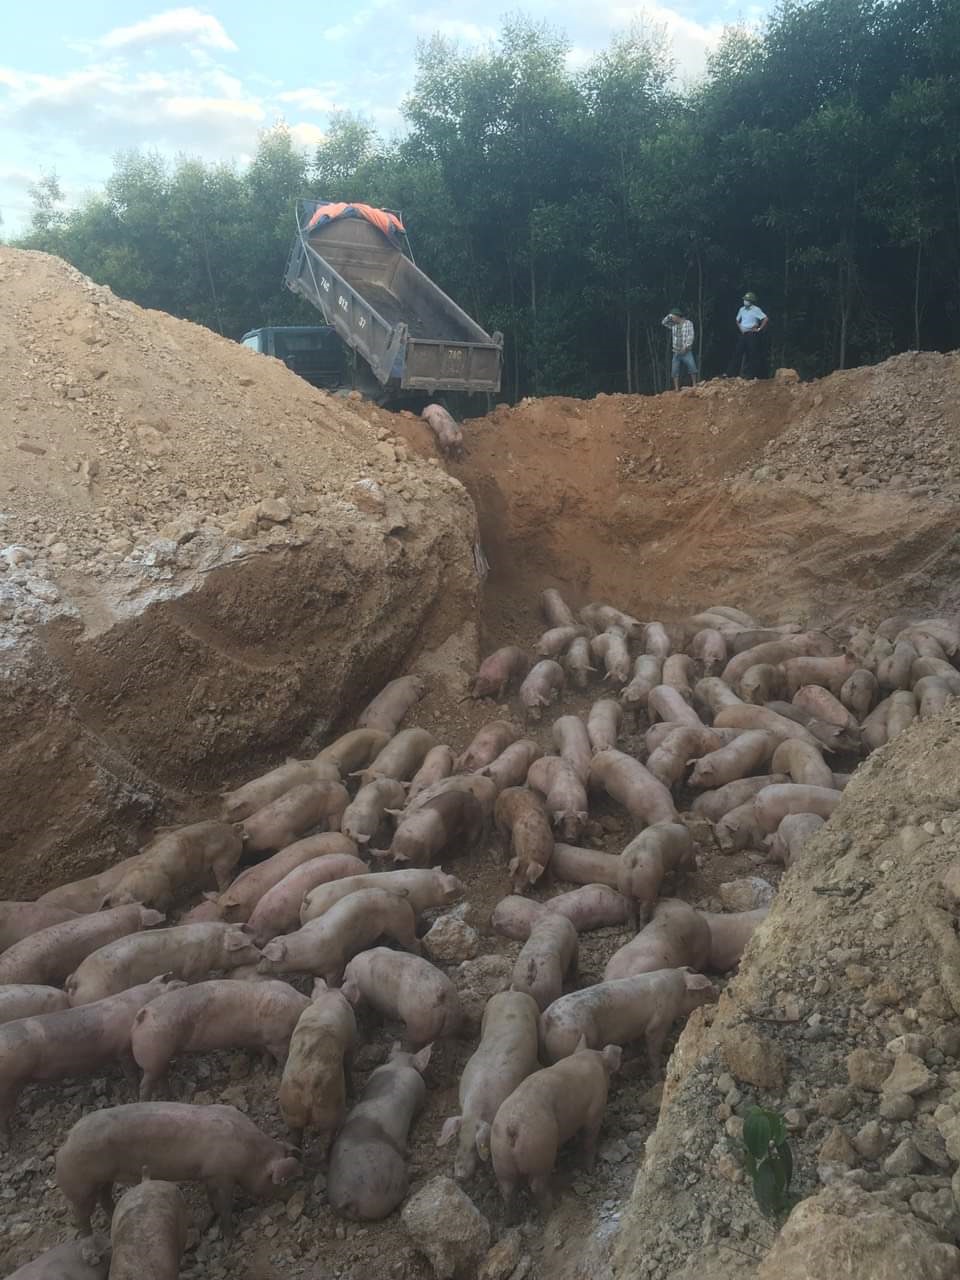 
Quảng Trị: Tiêu hủy gần 1.000 con lợn sống nhập khẩu từ Thái Lan bị dịch tả lợn châu Phi - Ảnh 2.